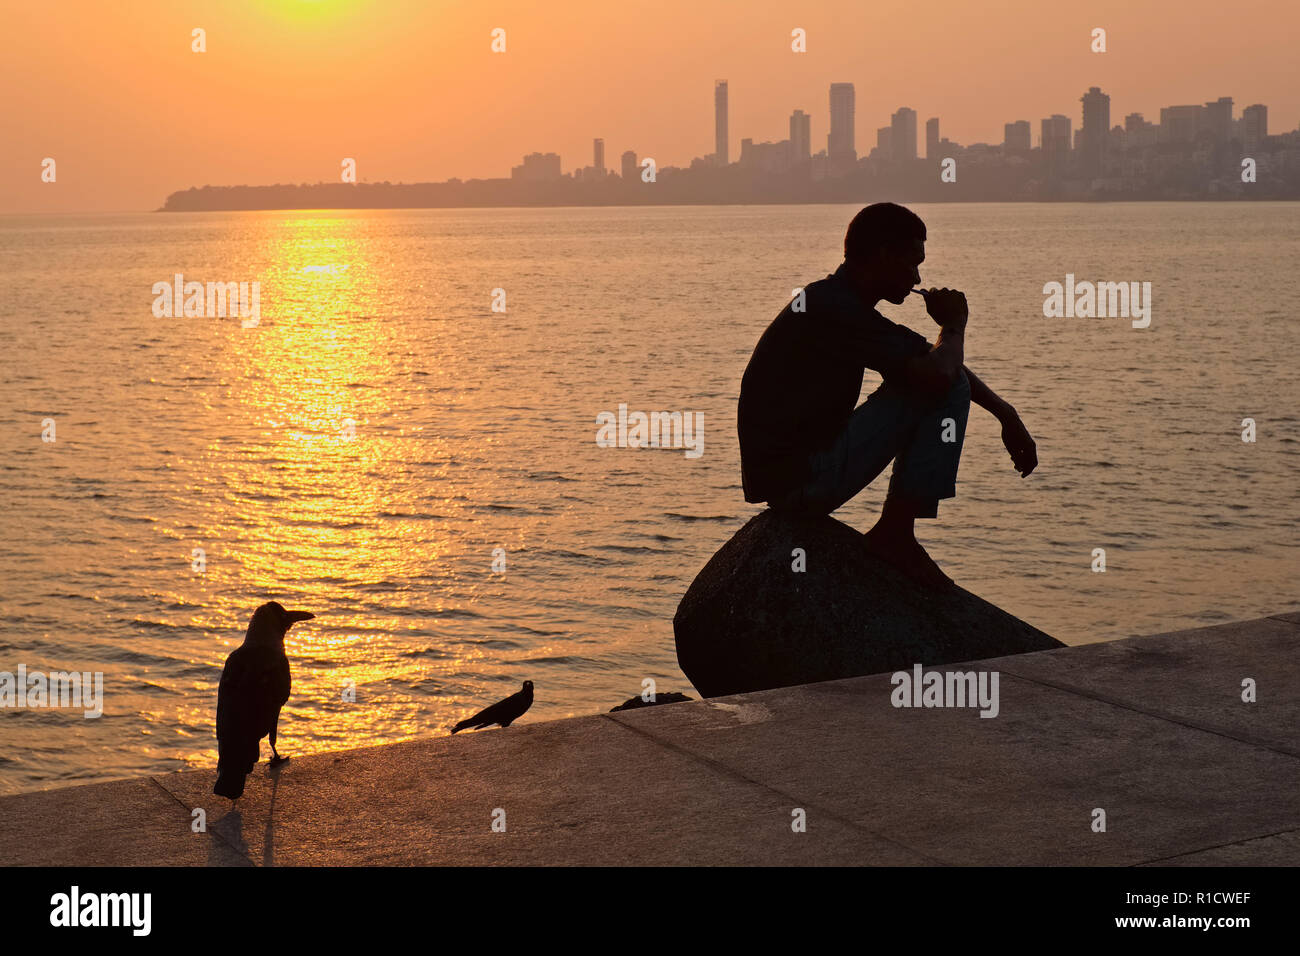 Un homme est assis à Marina Drive, Bombay, la promenade principale de la ville, frappant un penseur entraînent et apparemment vu par deux de ses corbeaux omniprésent Banque D'Images